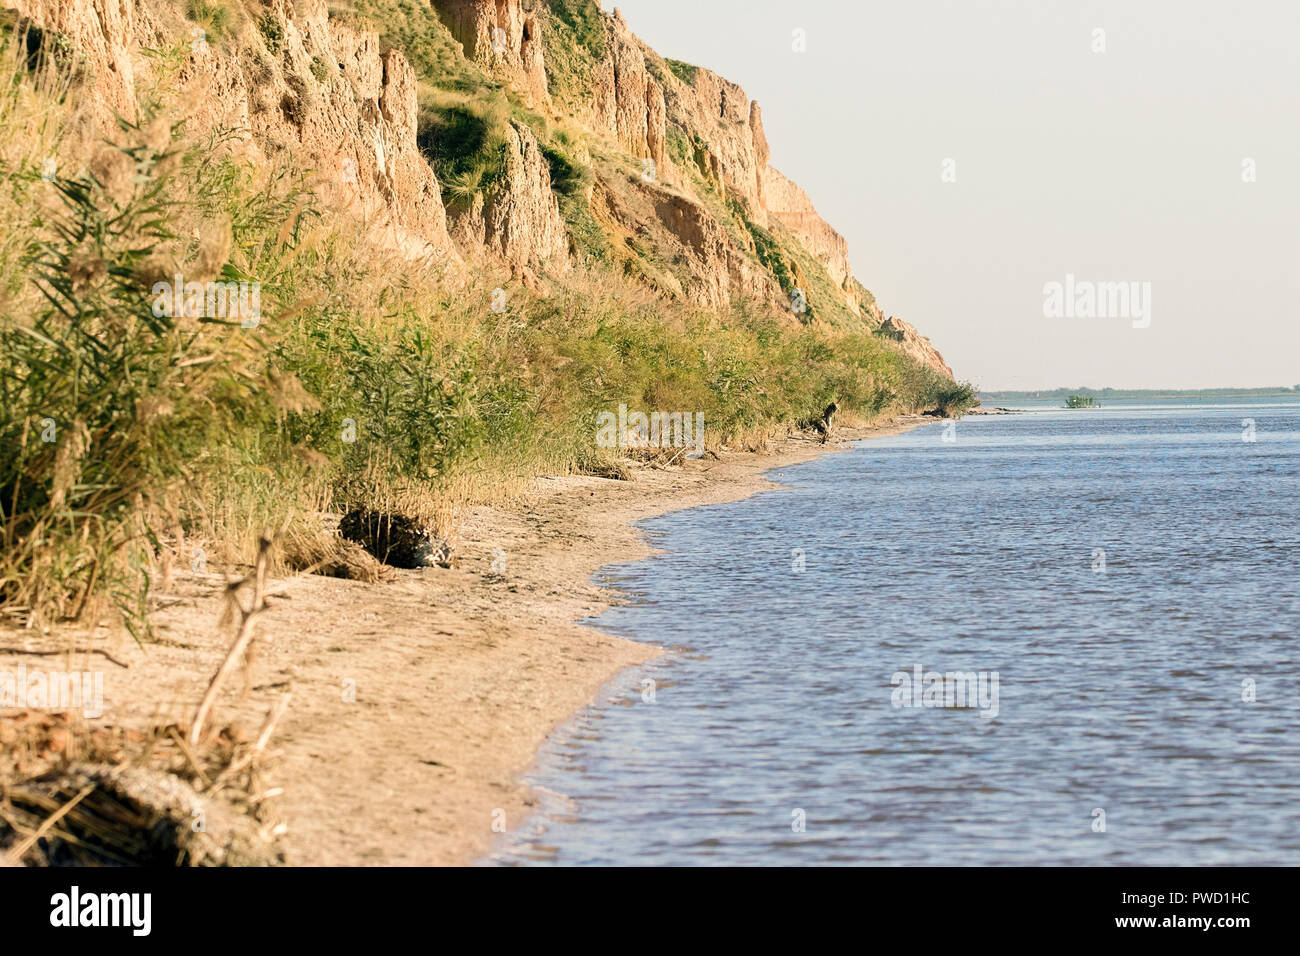 Image de la côte de l'estuaire avec falaises d'argile de Stanislav Banque D'Images